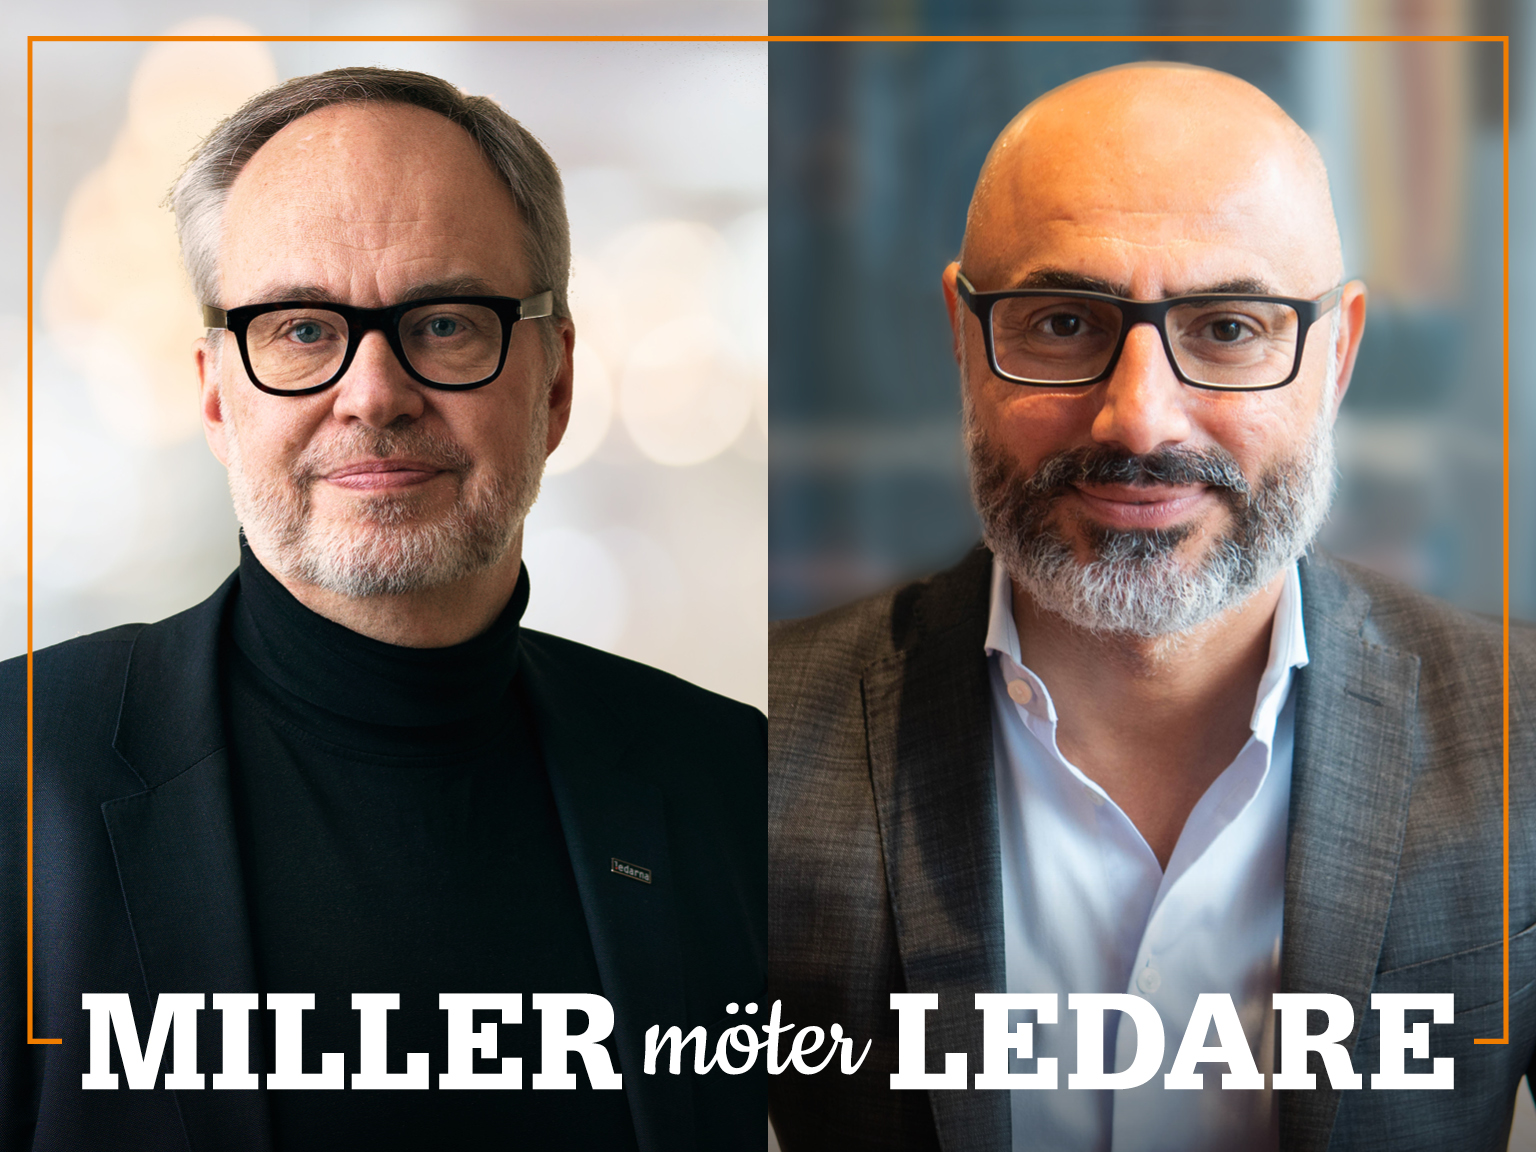 Omslag för podden Miller möter ledare – bild på Andreas Miller och Haval van Drumpt.